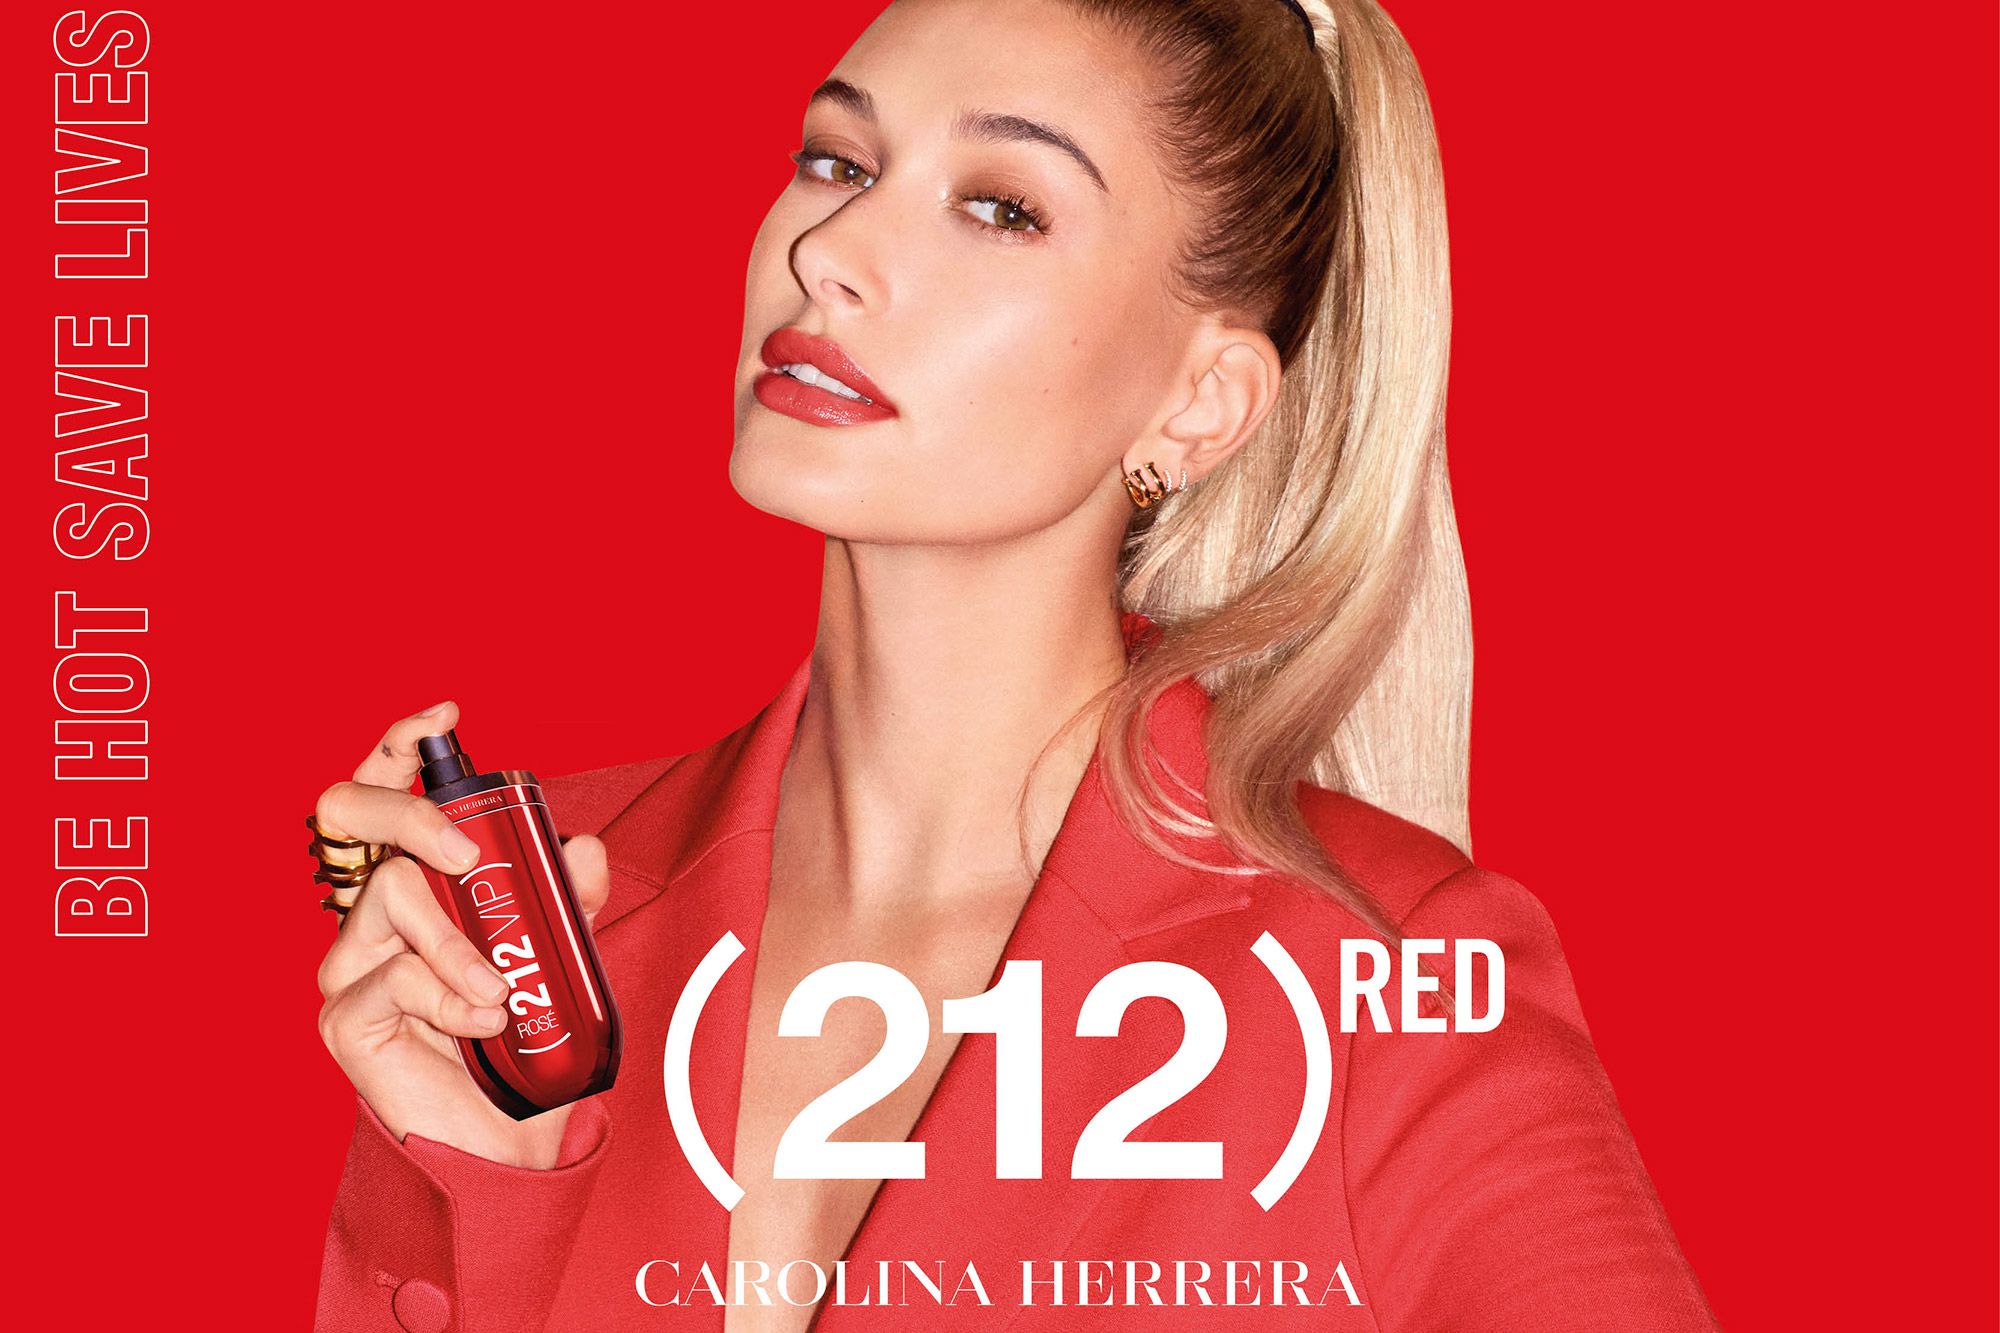 بررسی، مشاهده قیمت و خرید عطر (ادکلن) کارولینا هررا ۲۱۲ وی آی پی رز رد Carolina Herrera 212 VIP Rose Red اصل